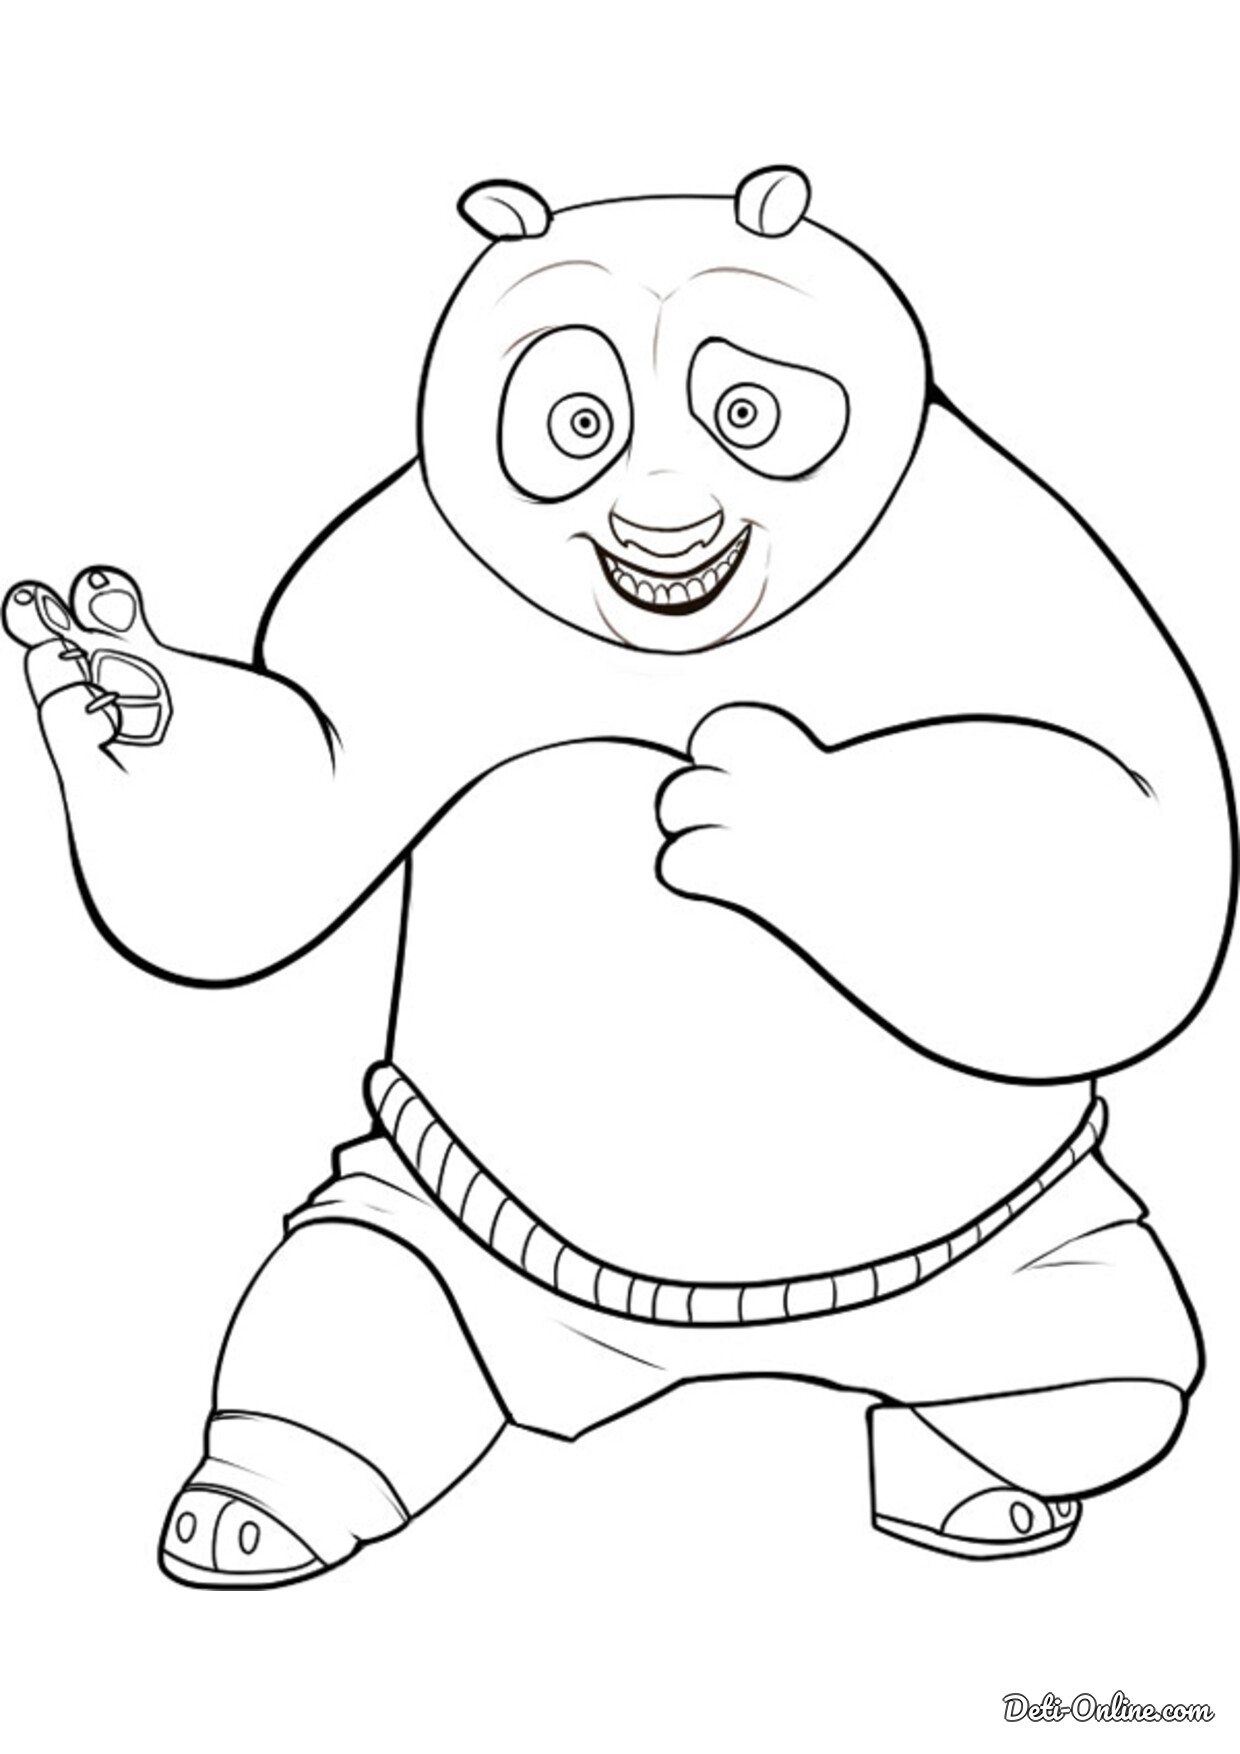 Раскраска кунг фу панда. Раскраска Панда. Панда раскраска для детей. Рисунок мультяшного героя.